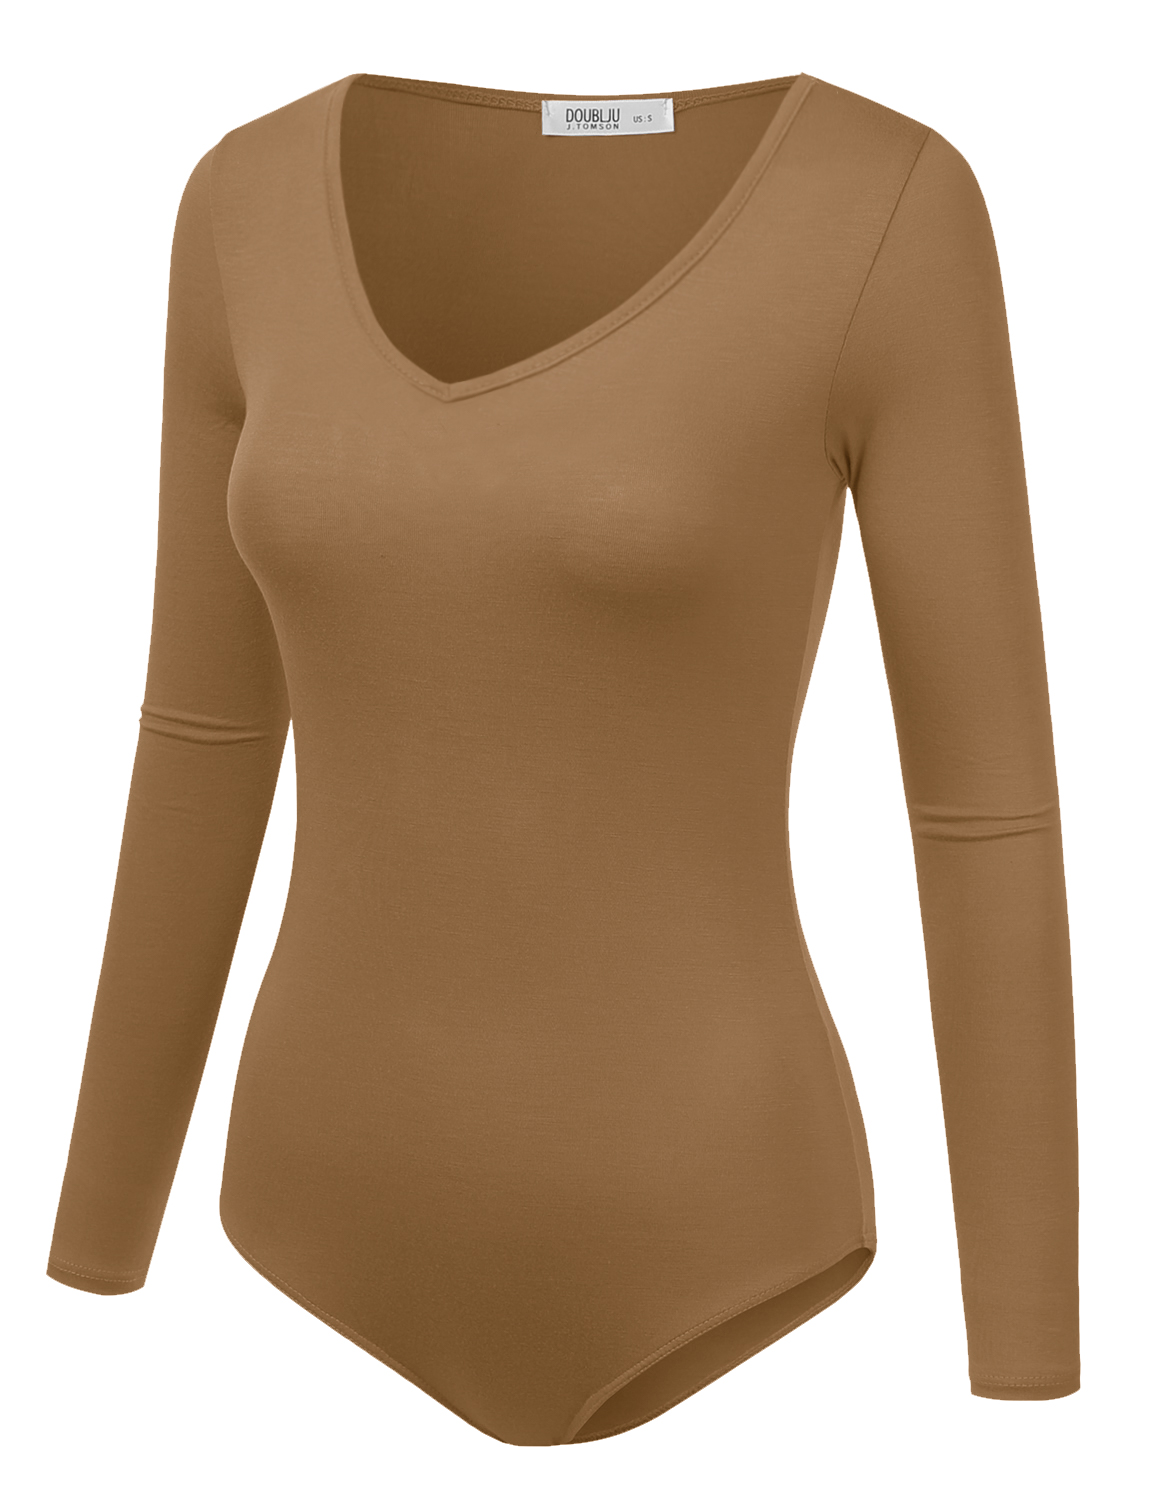 Cute Taupe Bodysuit - V-Neck Bodysuit - Balloon Sleeve Bodysuit - Lulus